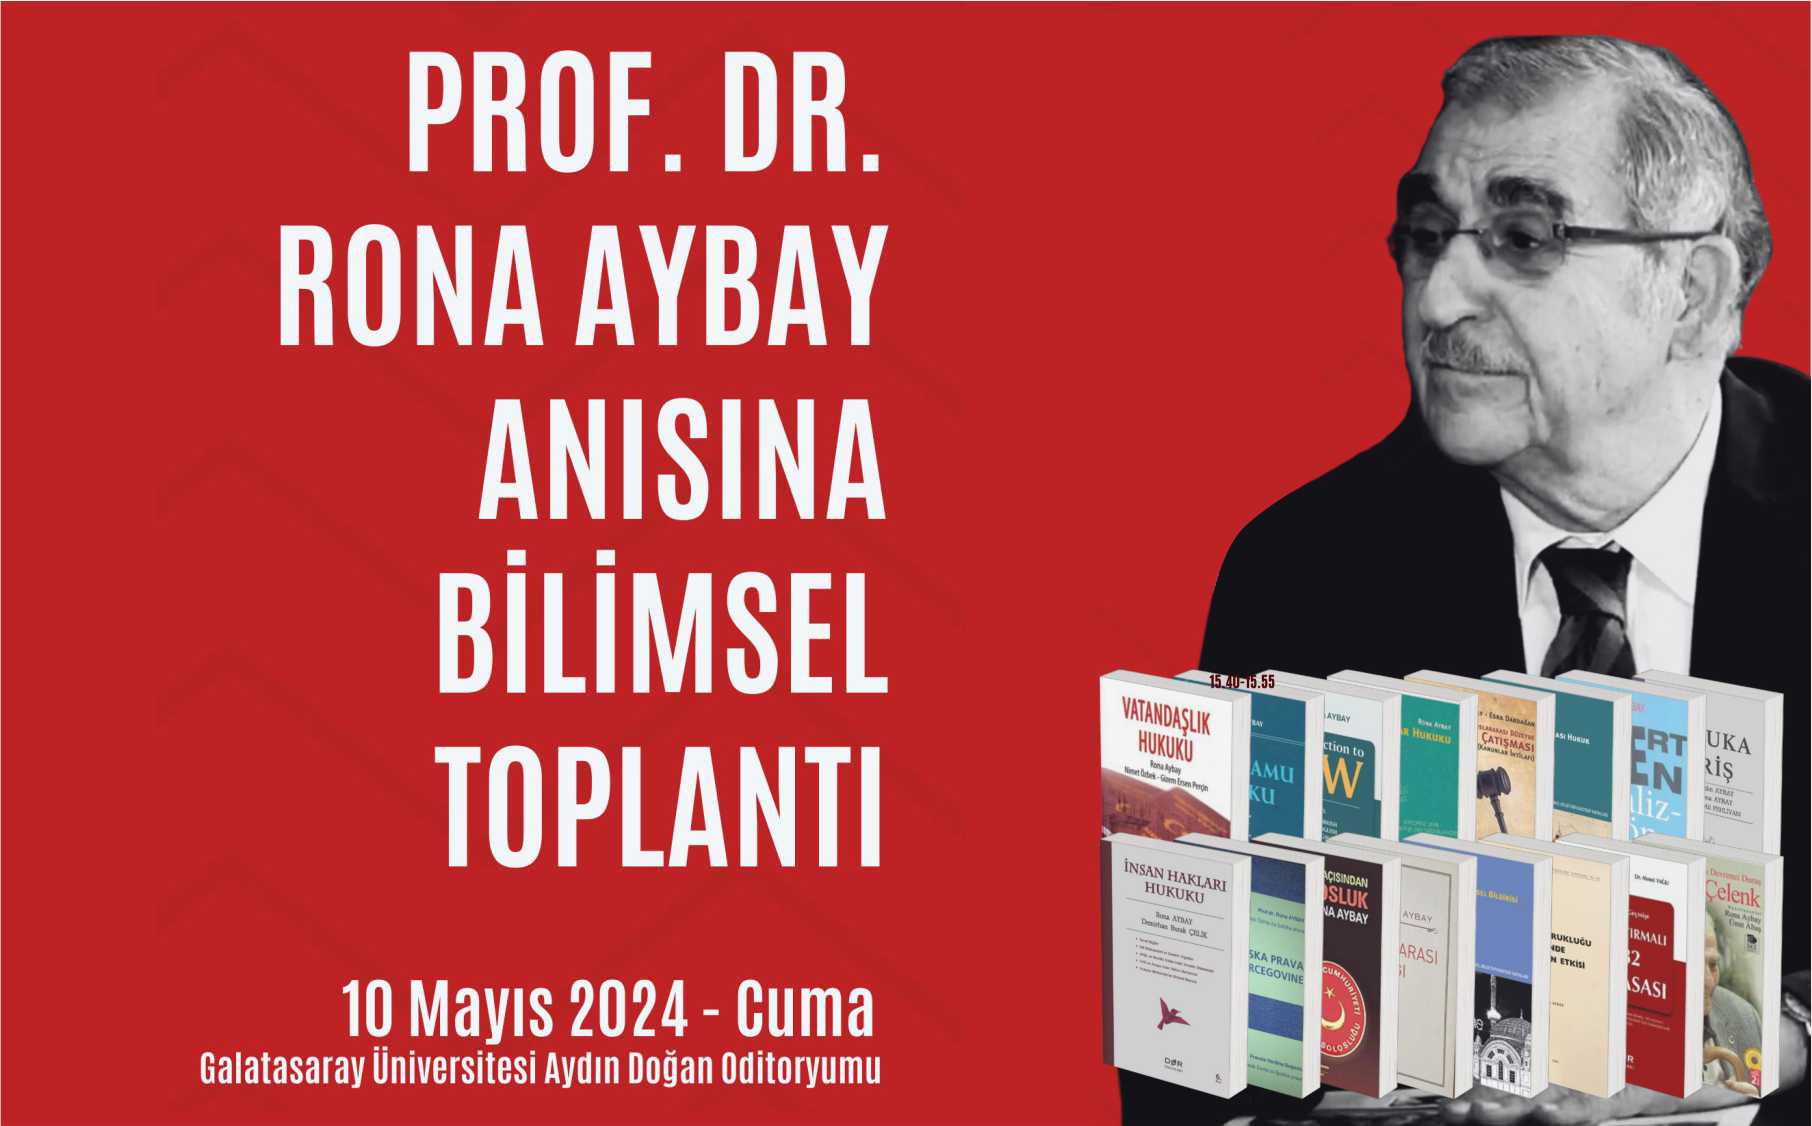 Prof. Dr. Ronay Aybay Anısına Bilimsel Toplantı: 1924 Anayasası'nın 100. Yılında Türkiye'de Vatandaşlık ve İnsan Hakları duyuru görseli